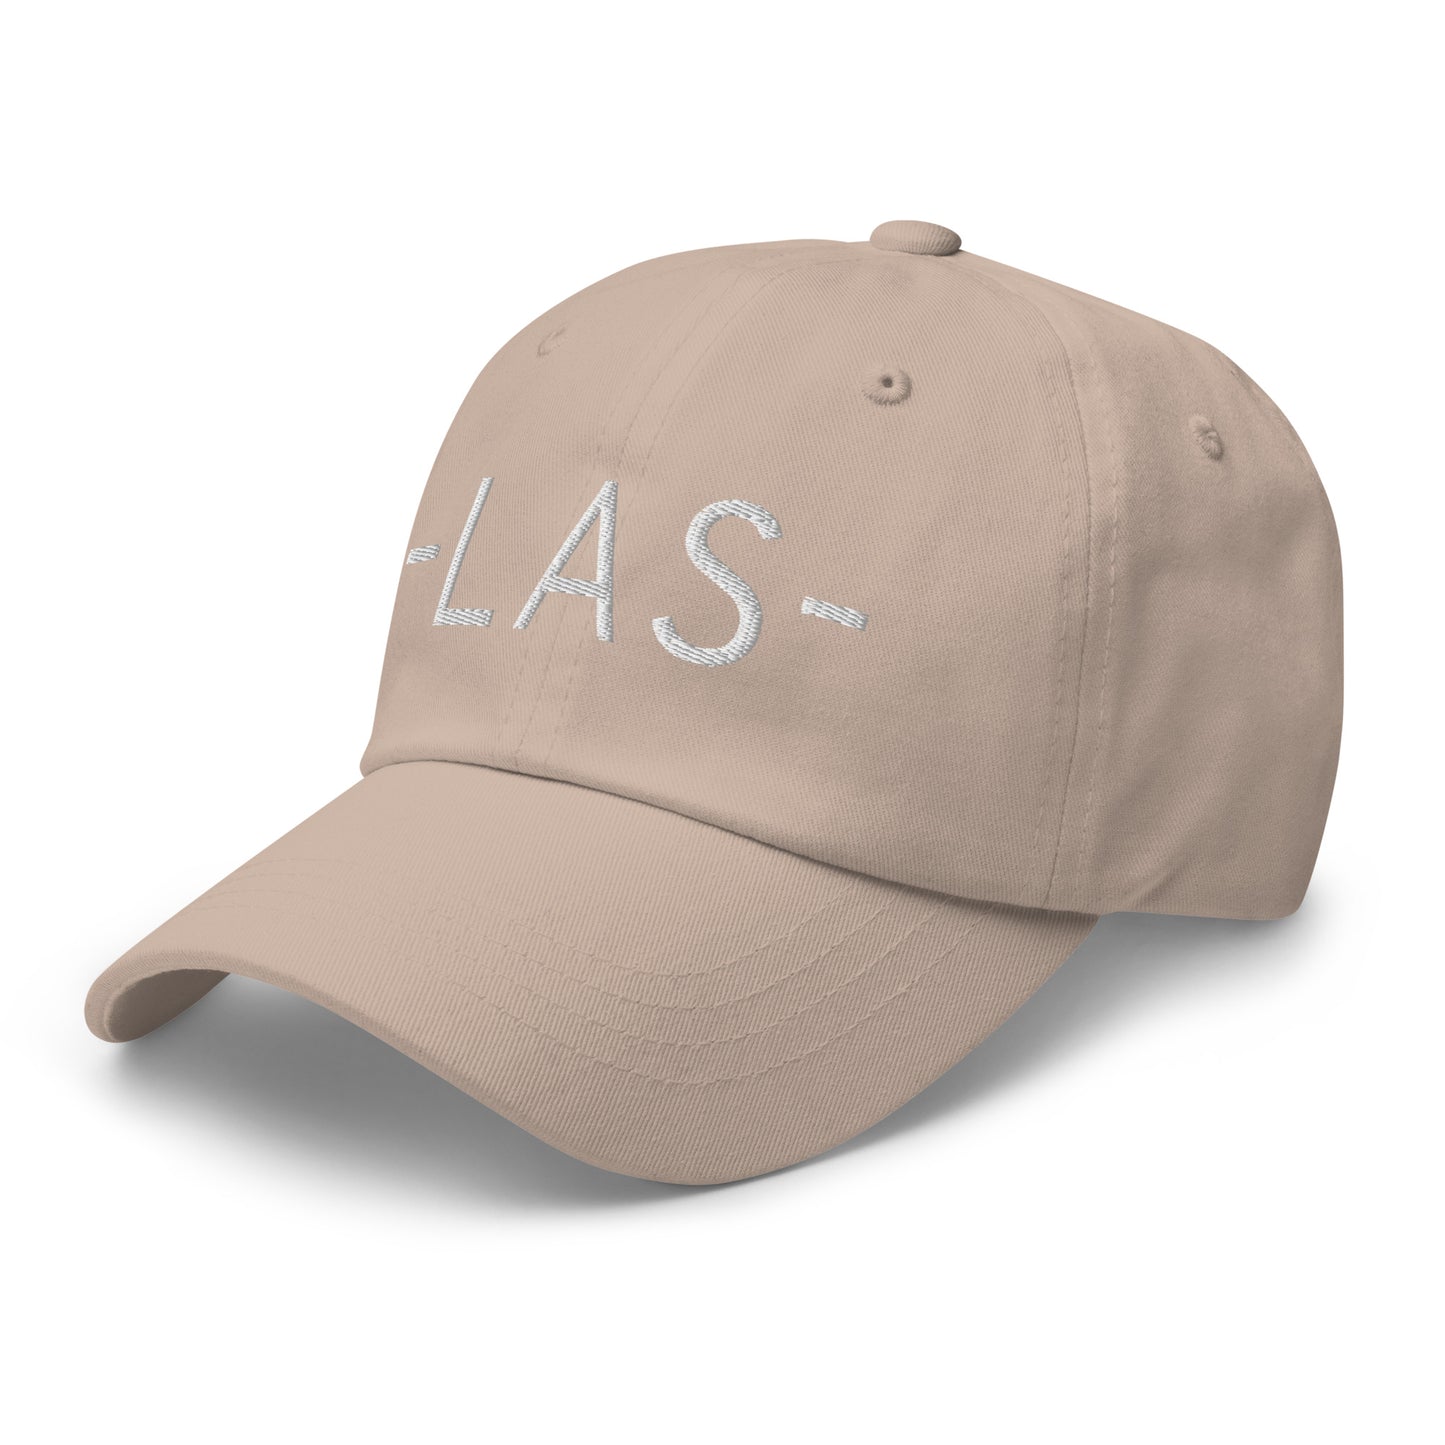 Souvenir Baseball Cap - White • LAS Las Vegas • YHM Designs - Image 24